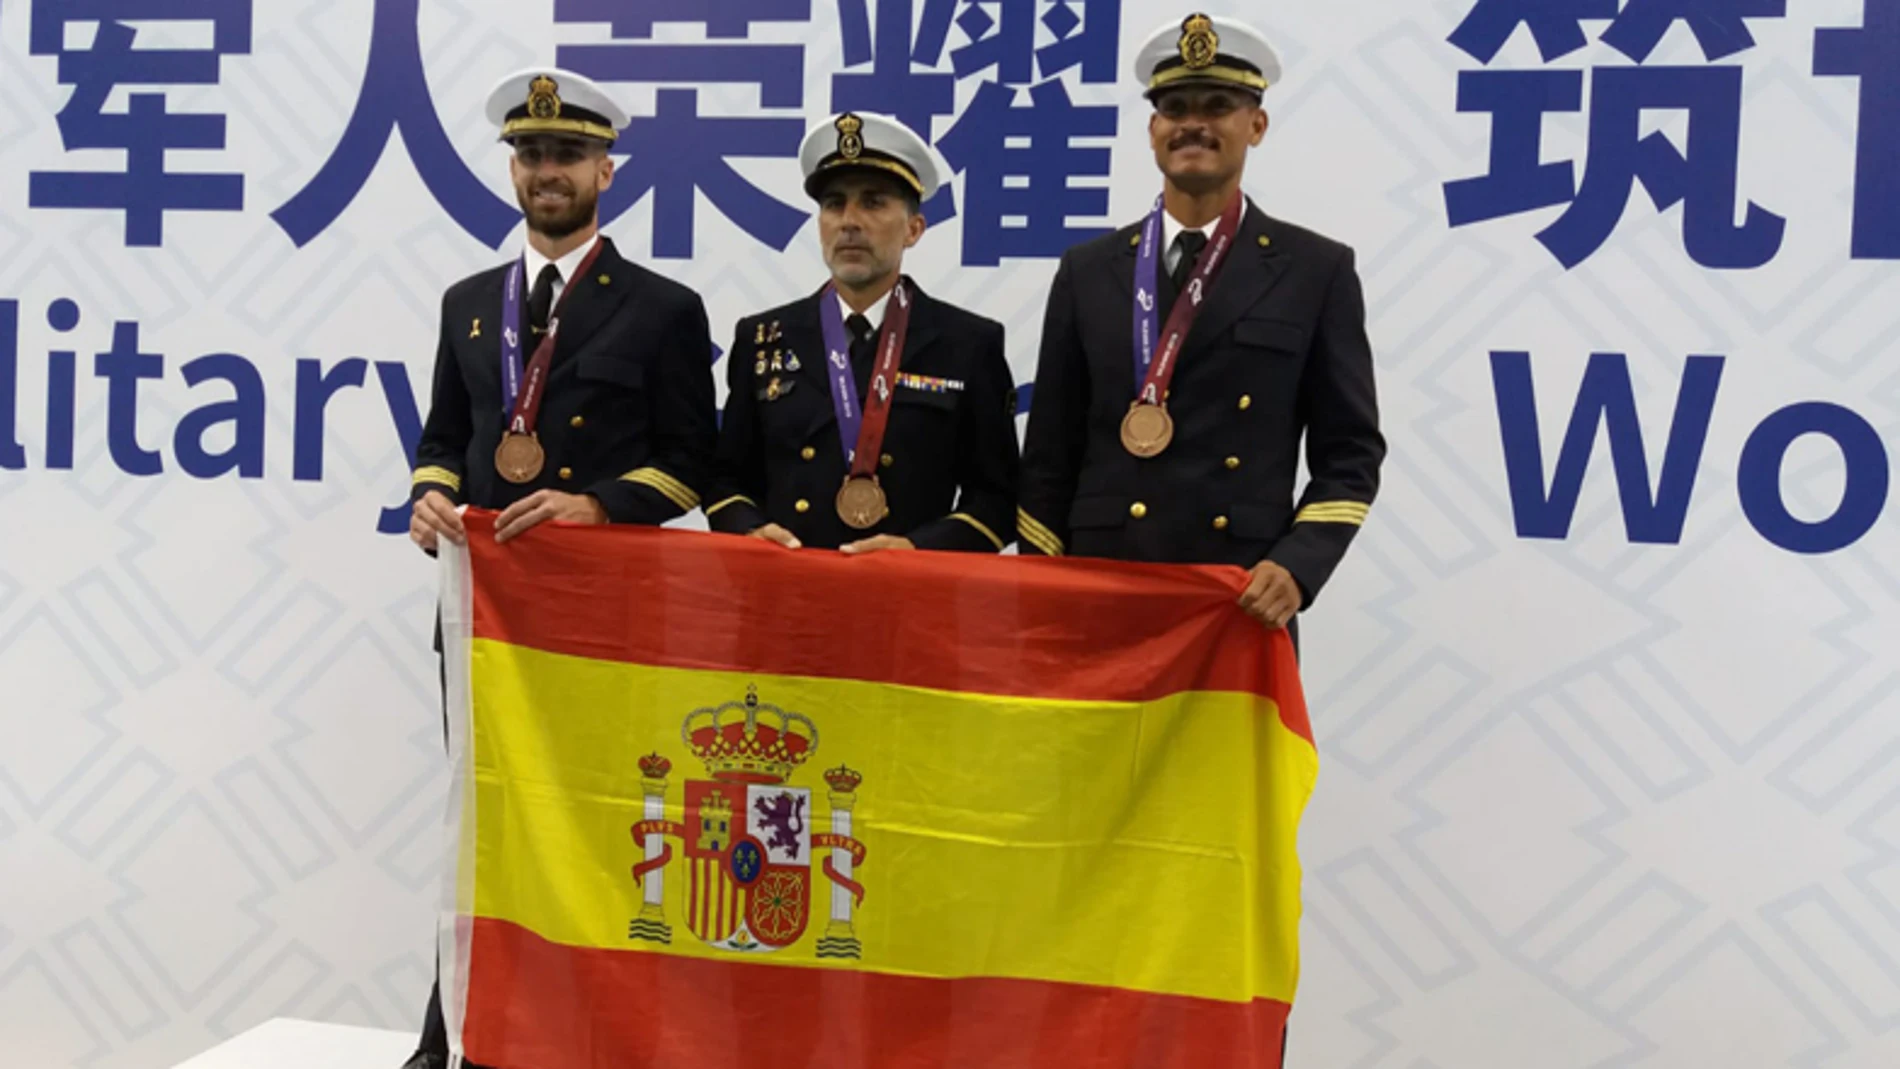 Militares españoles en los Juegos Mundiales de Wuhan